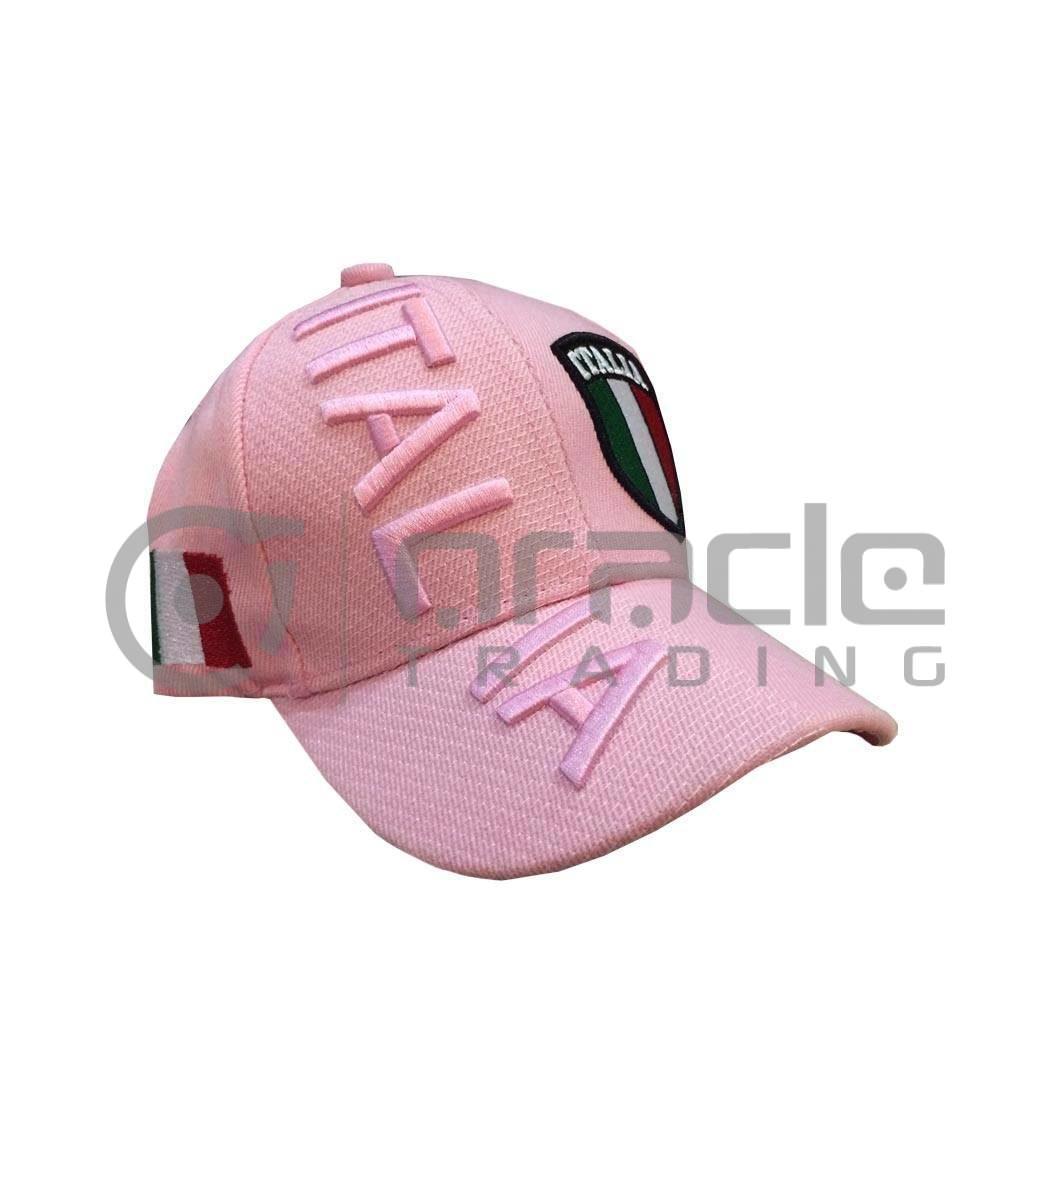 3D Italia Hat - Pink - Kid Size